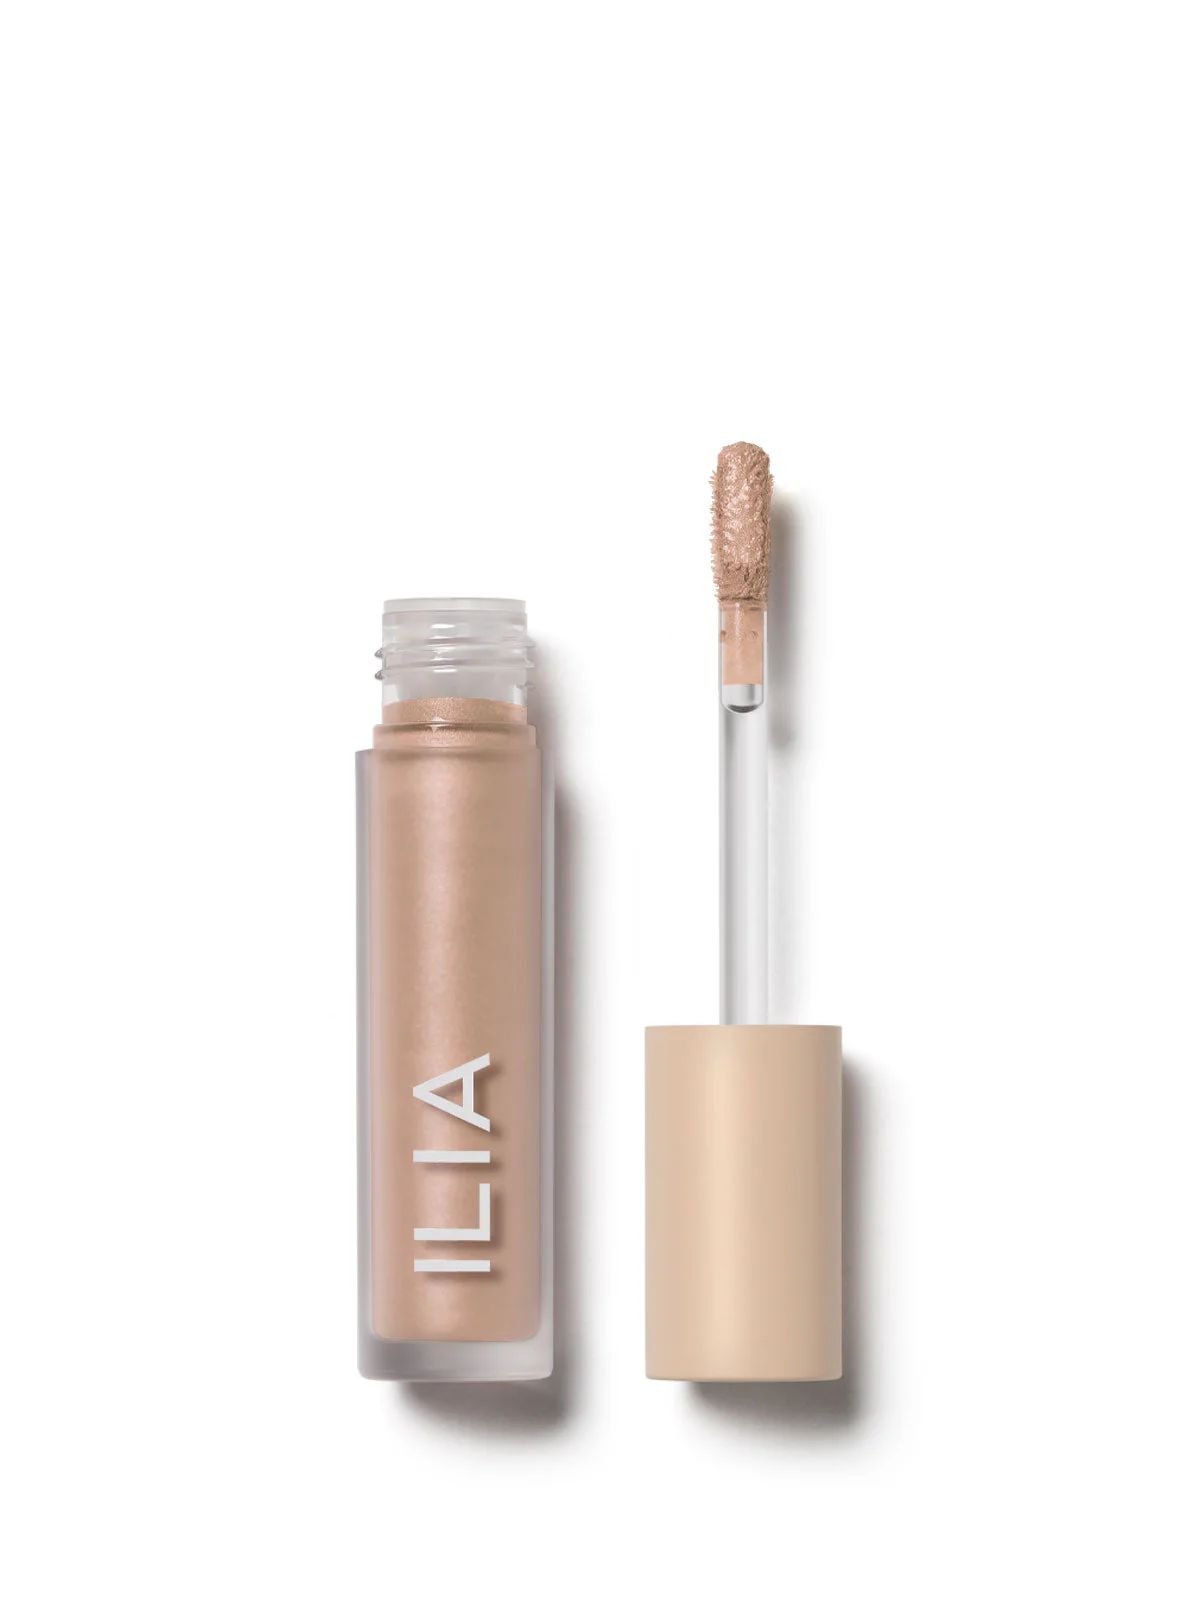 ILIA Liquid Powder Chromatic Eye Tint - Glaze | ILIA Beauty